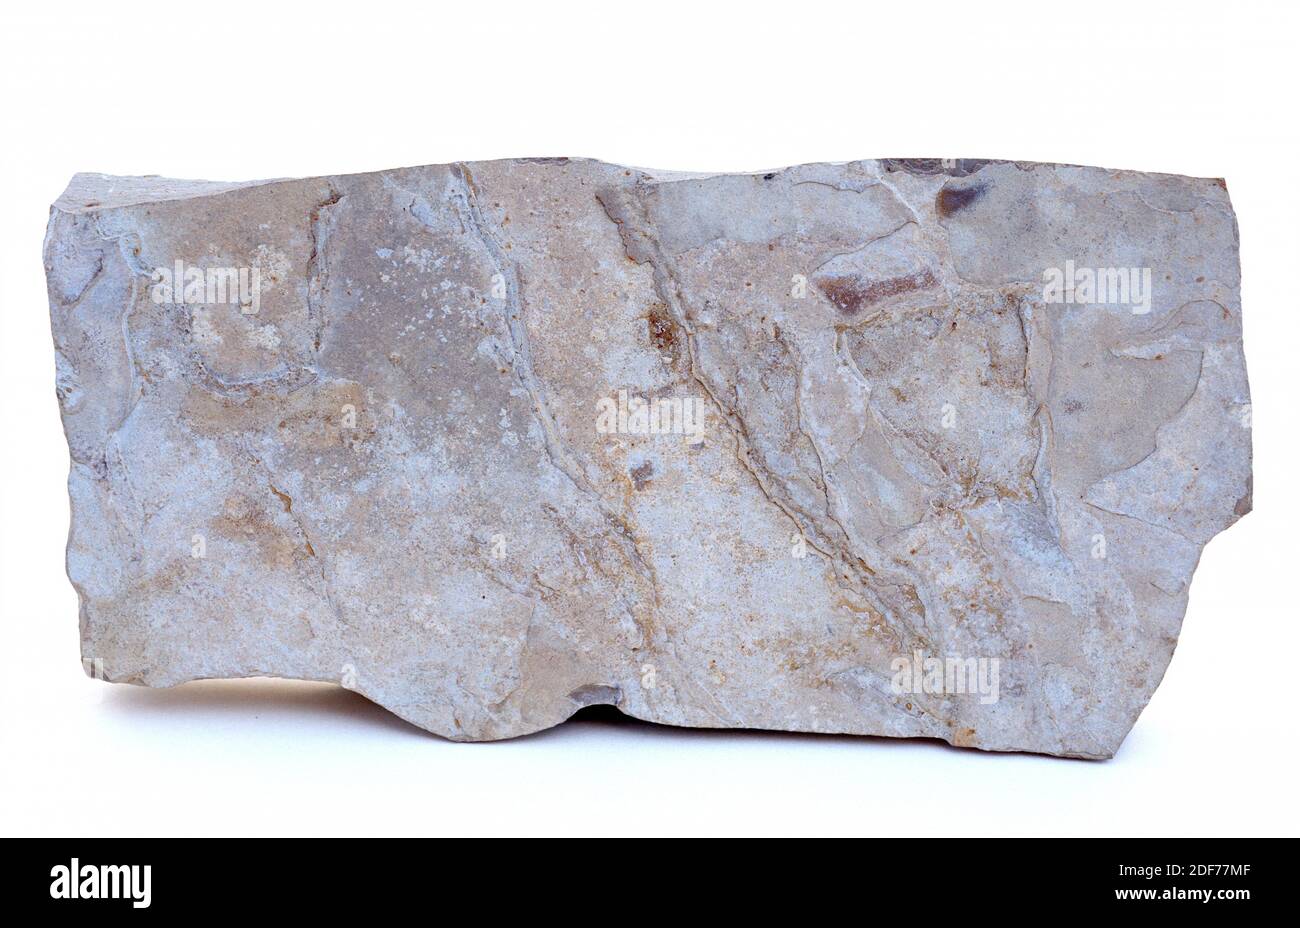 La piedra caliza es una roca sedimentaria compuesta principalmente de carbonato de calcio. Muestra. Foto de stock